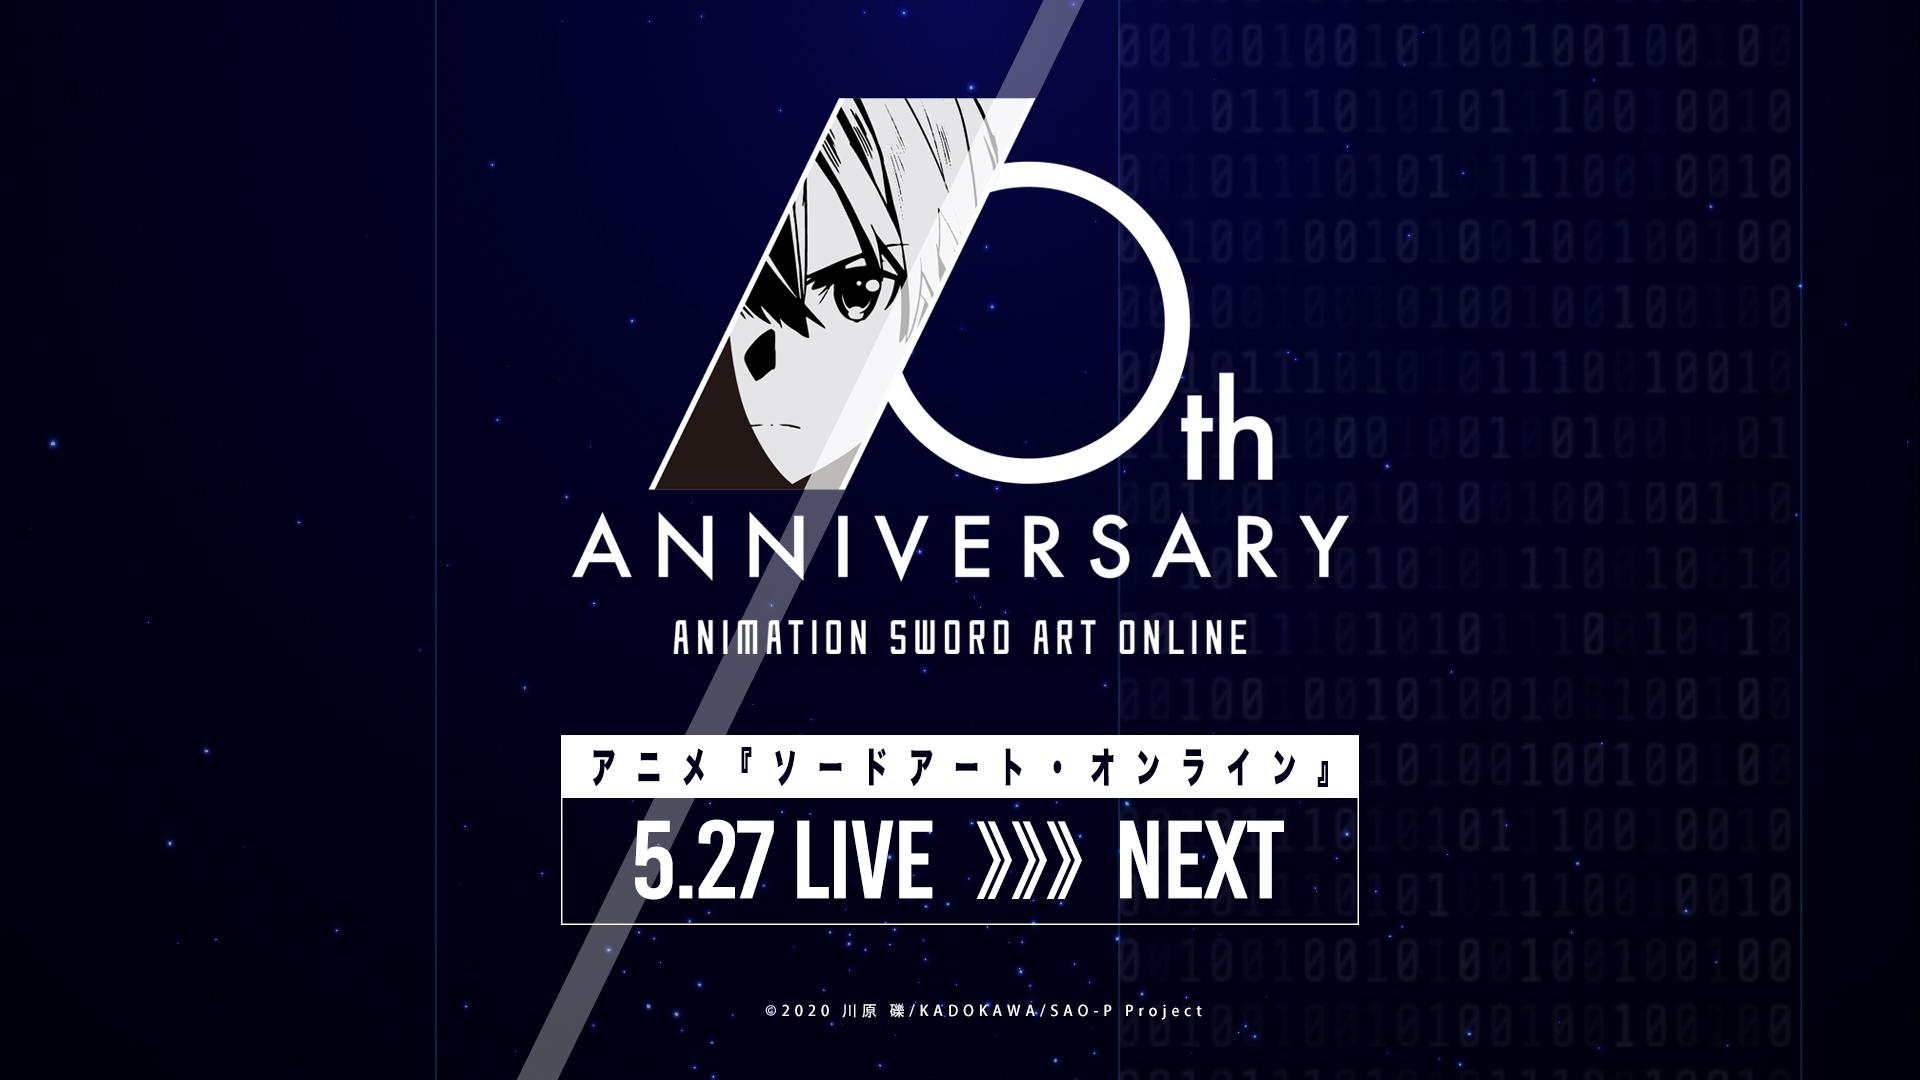 Sự kiện kỷ niệm 10 năm của Sword Art Online sẽ được diễn ra trong tháng này